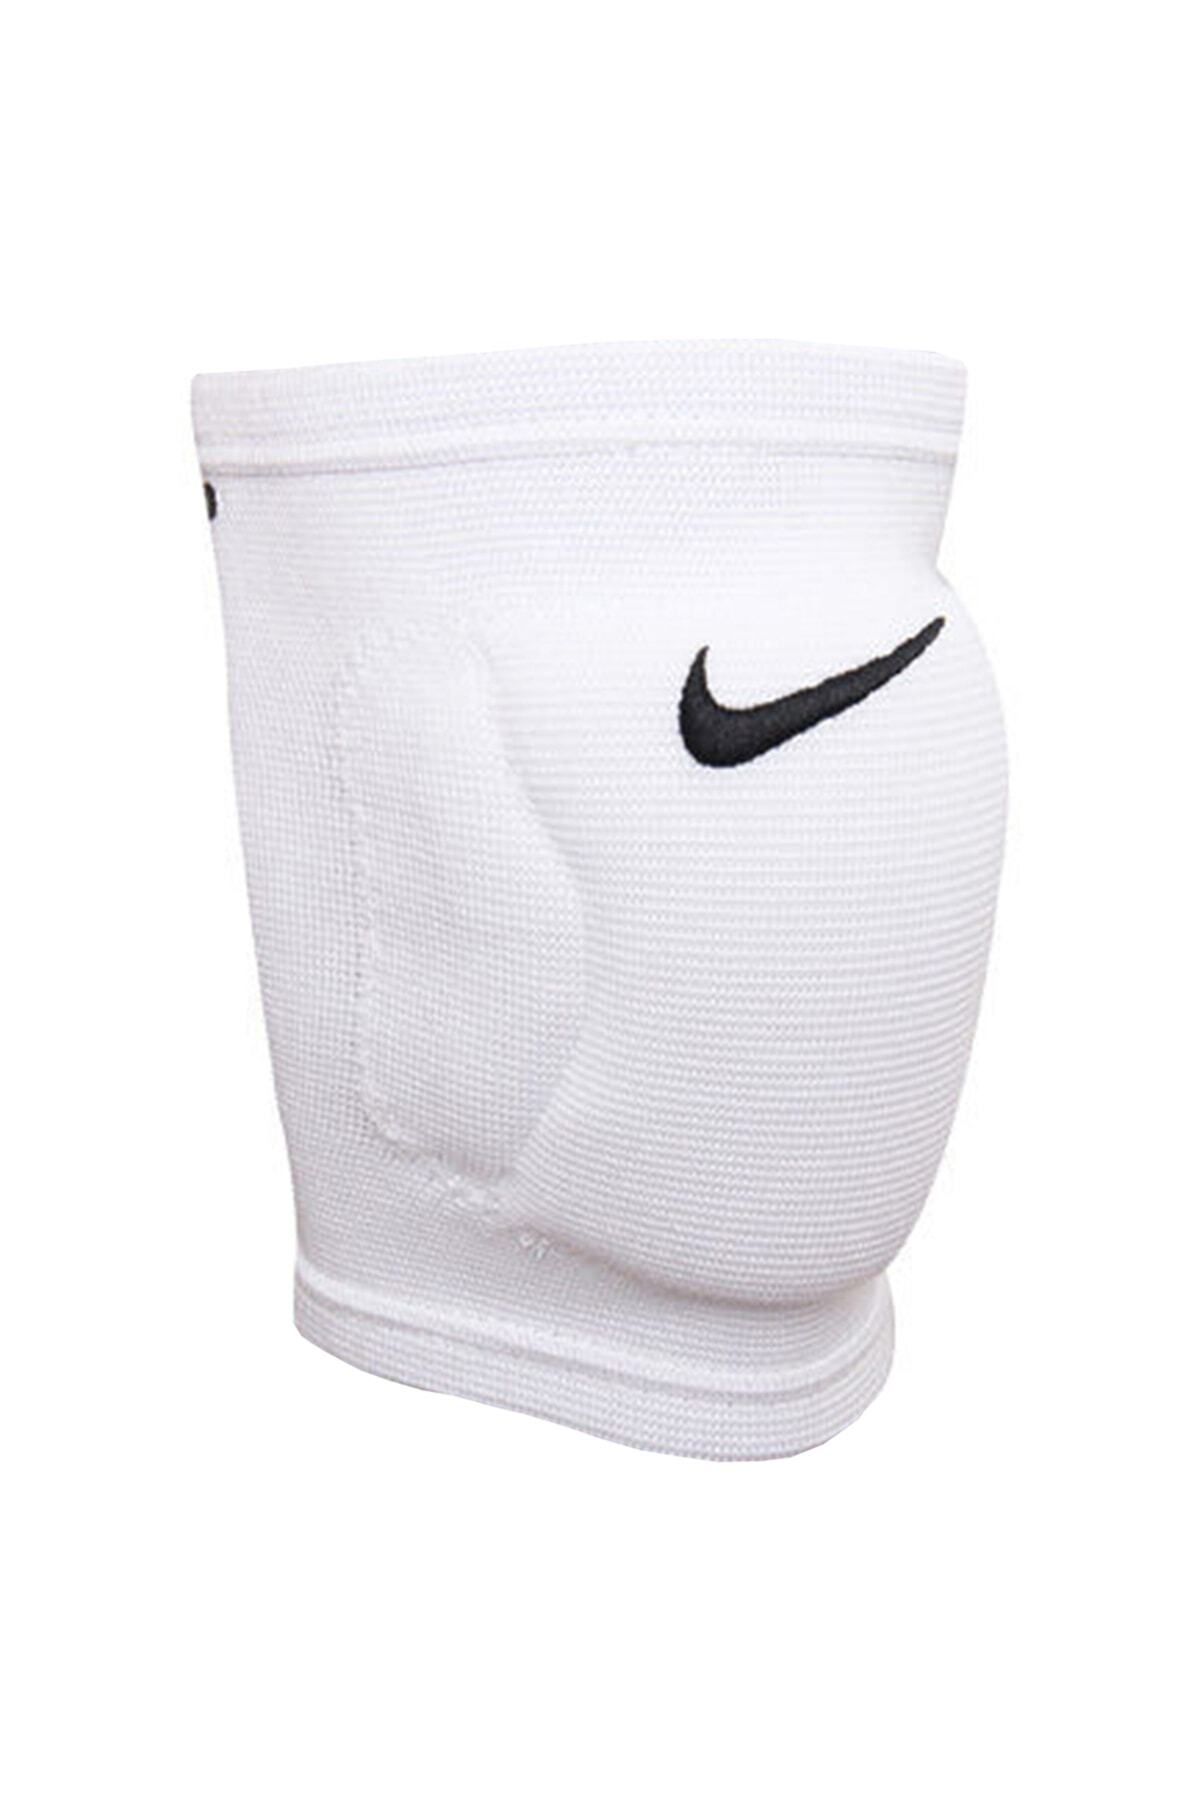 Nike Voleybol Dizliği Nvp05-100 Streak